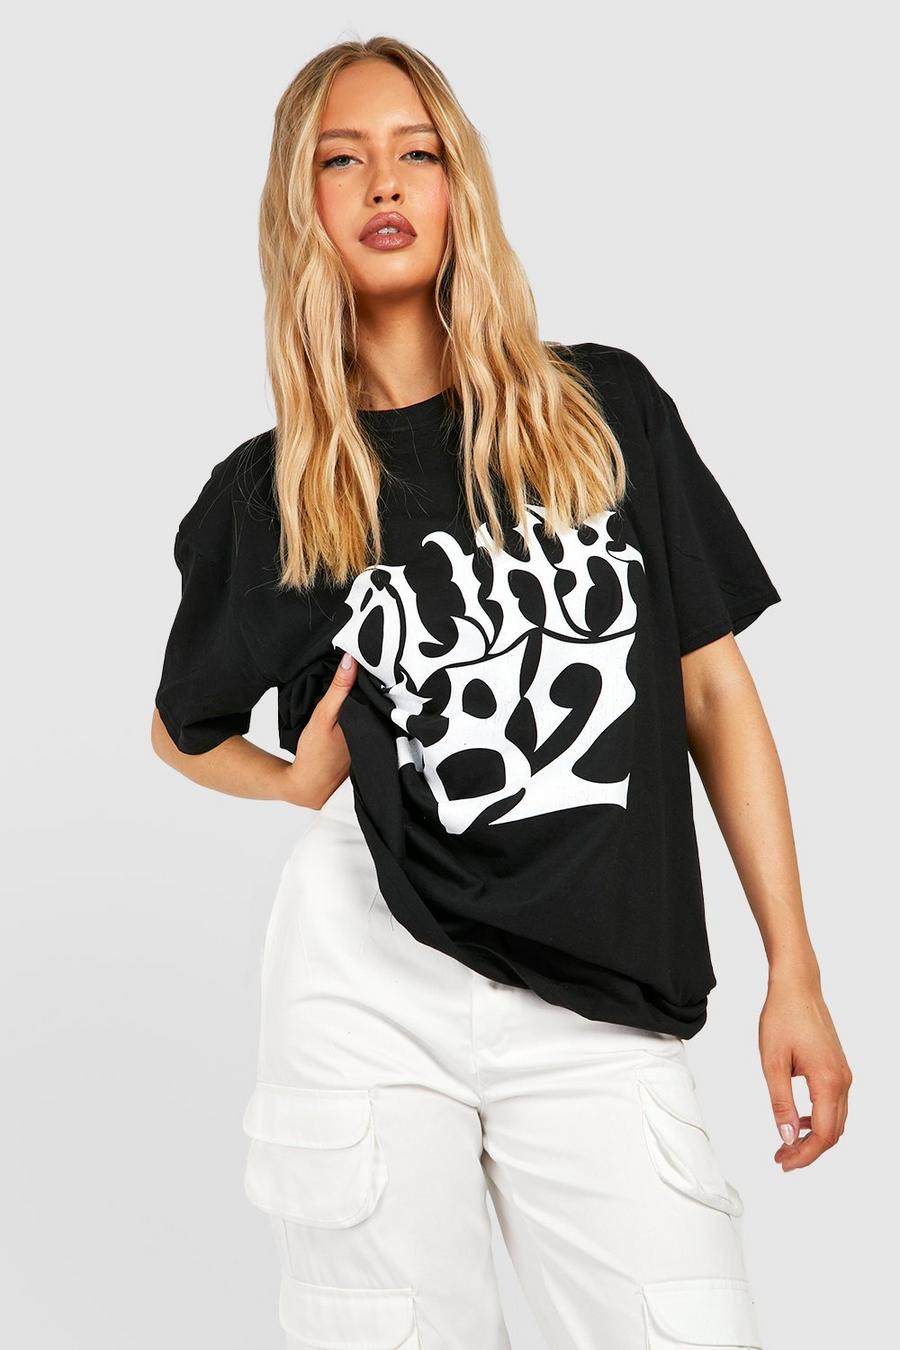 Black Tall Oversized Blink 182 License T-shirt